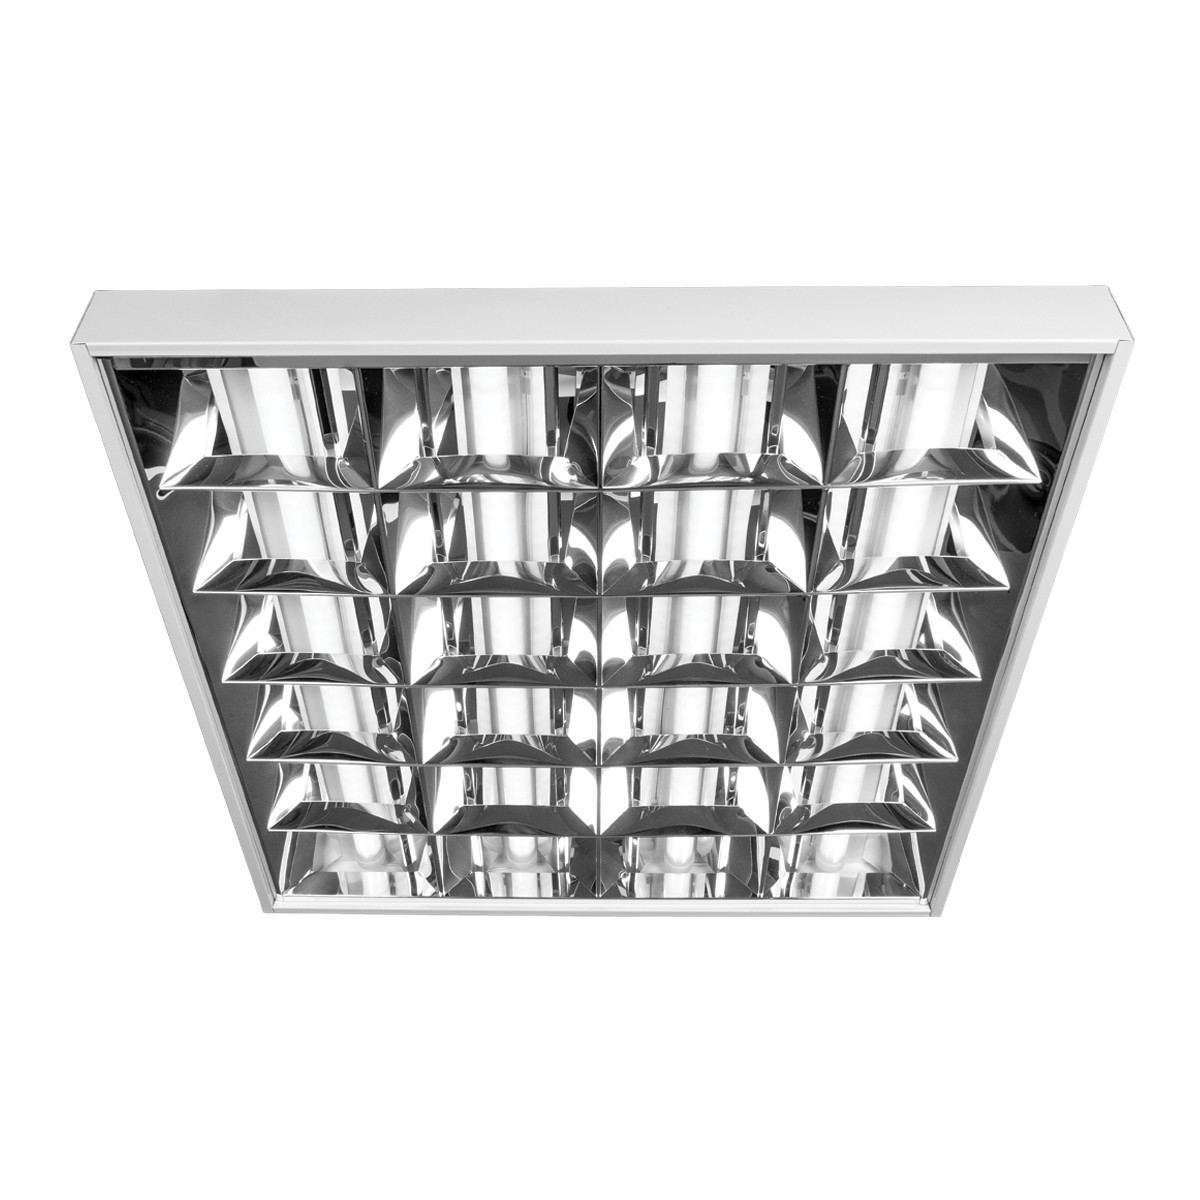 Φωτιστικό led πάνελ τετράγωνο με 5 διπλούς καθρέπτες, λευκό πλαίσιο, 46W, 4000K, 3.700lm, 900mA VK/04286/900/5/W/C